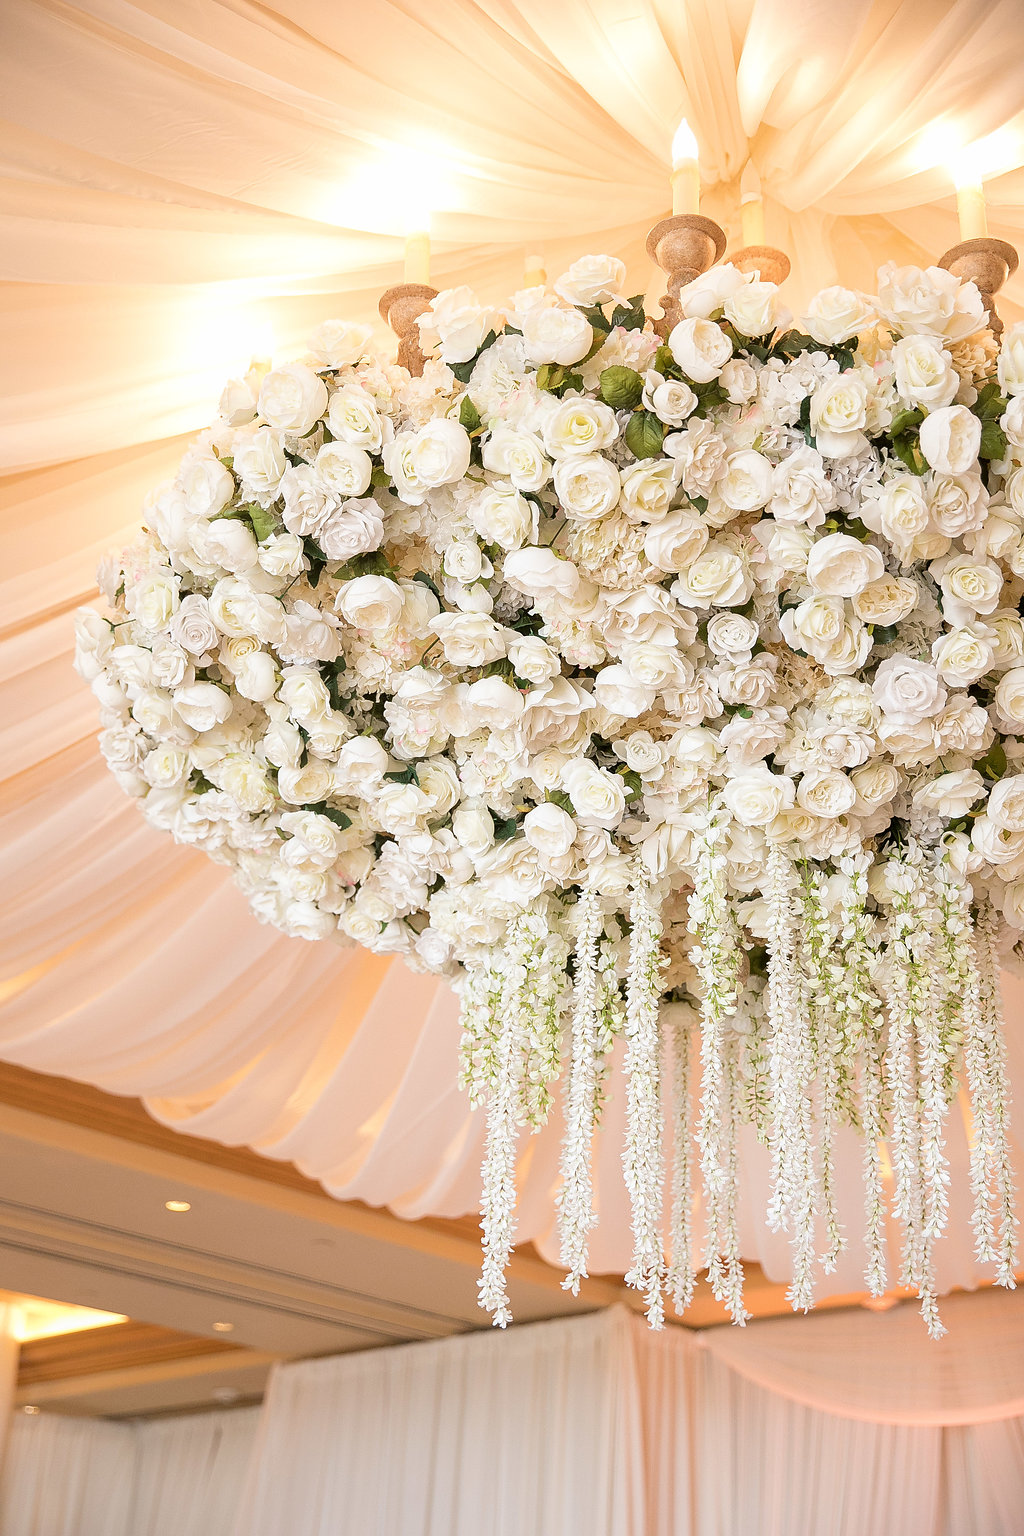 Ceiling Wedding Decor, Wedding Ceiling Decor Flowers